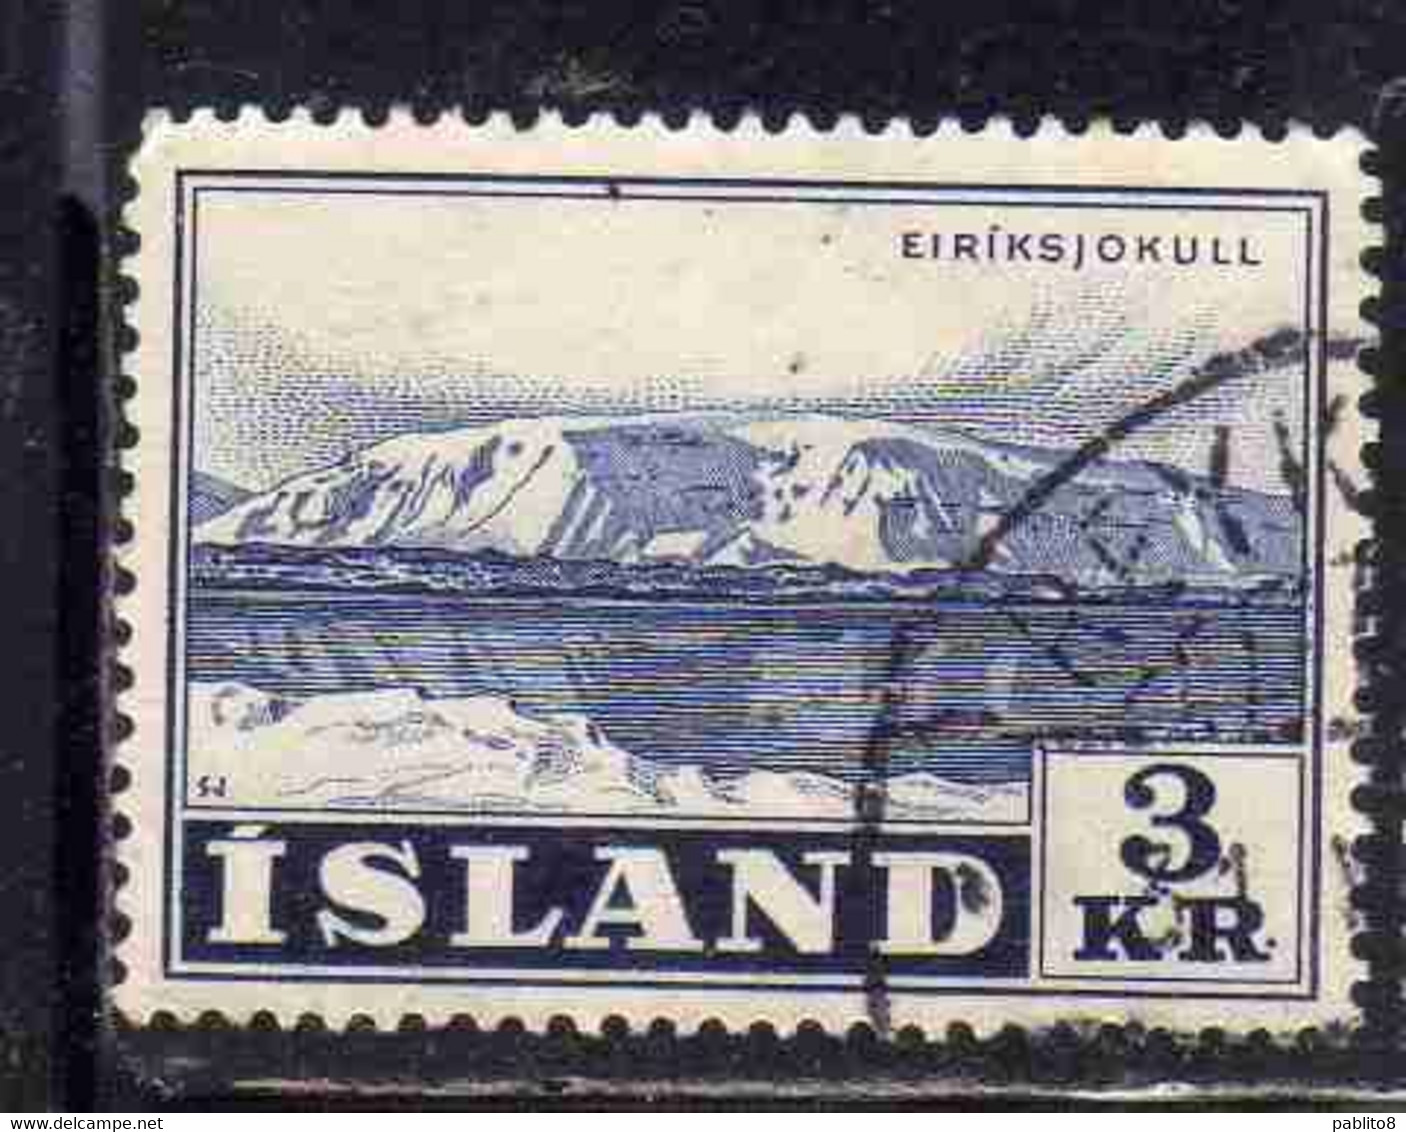 ISLANDA ICELAND ISLANDE 1957 GLACIERS ERIKSJOKULL 3k USED USATO OBLITERE' - Used Stamps